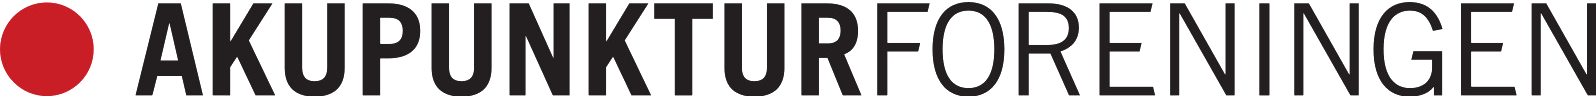 Akupunkturforeningen - Logo